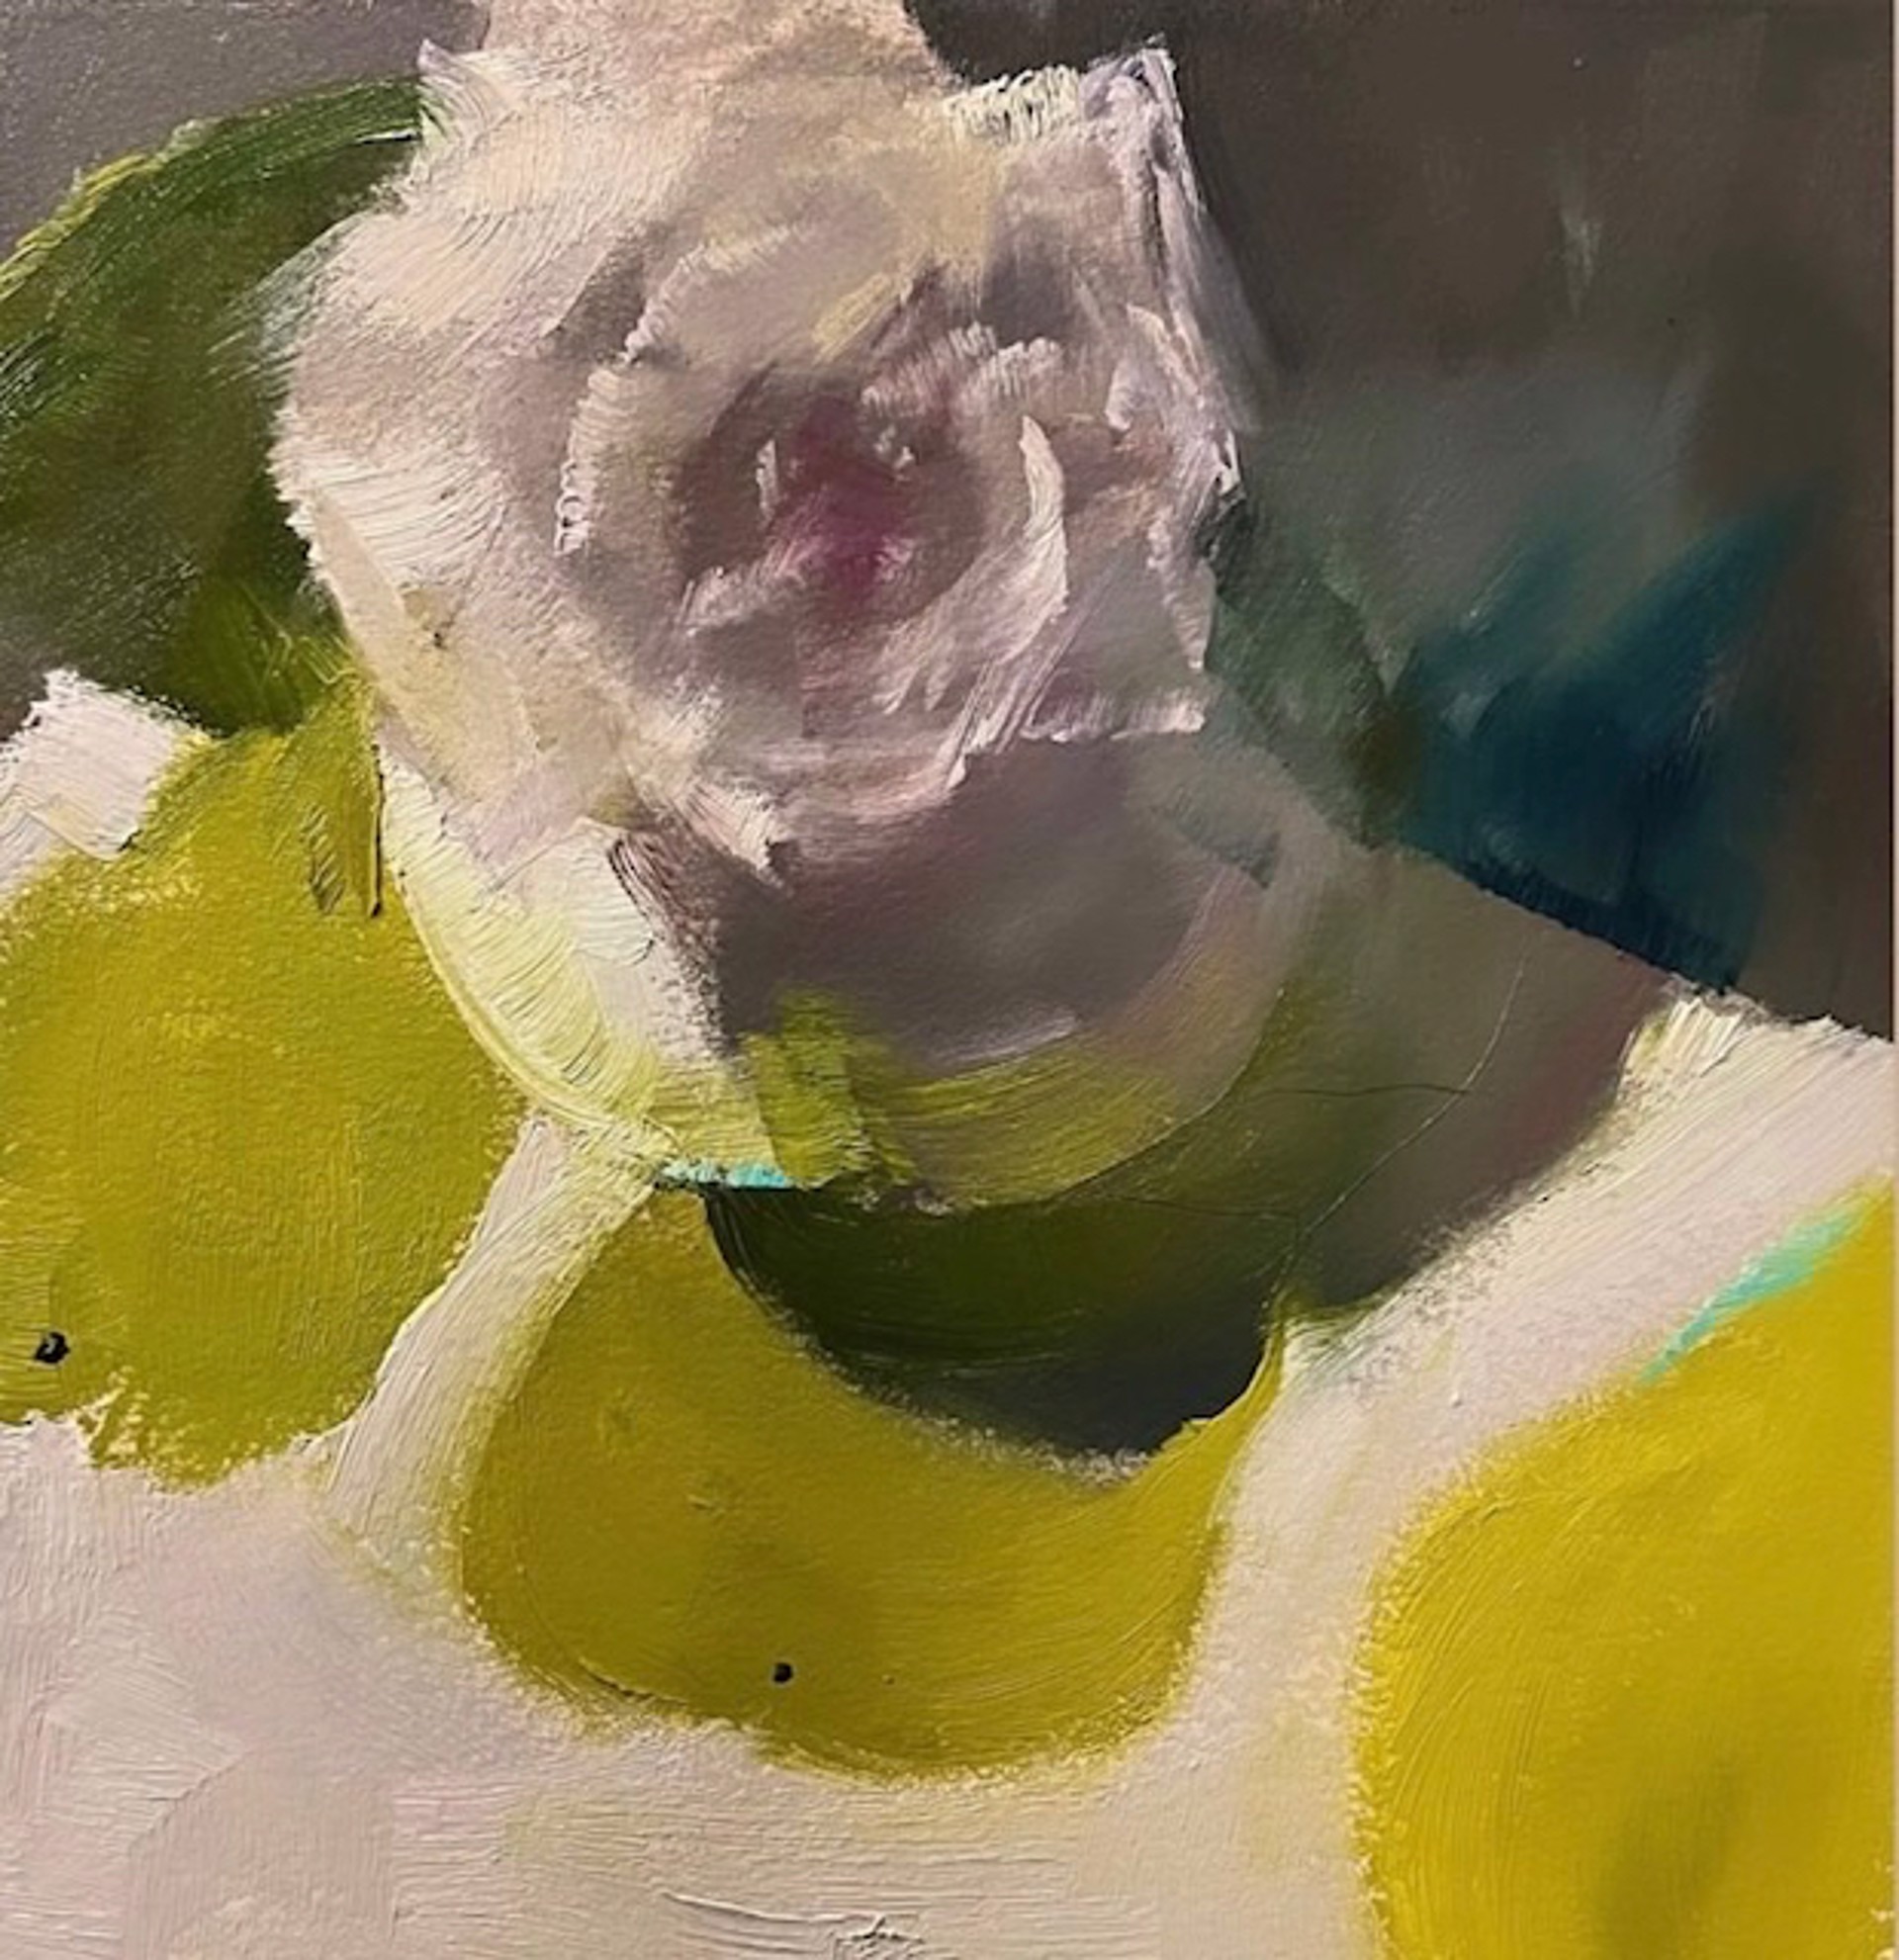 Rose on Marimekko by Ingrid Derrickson